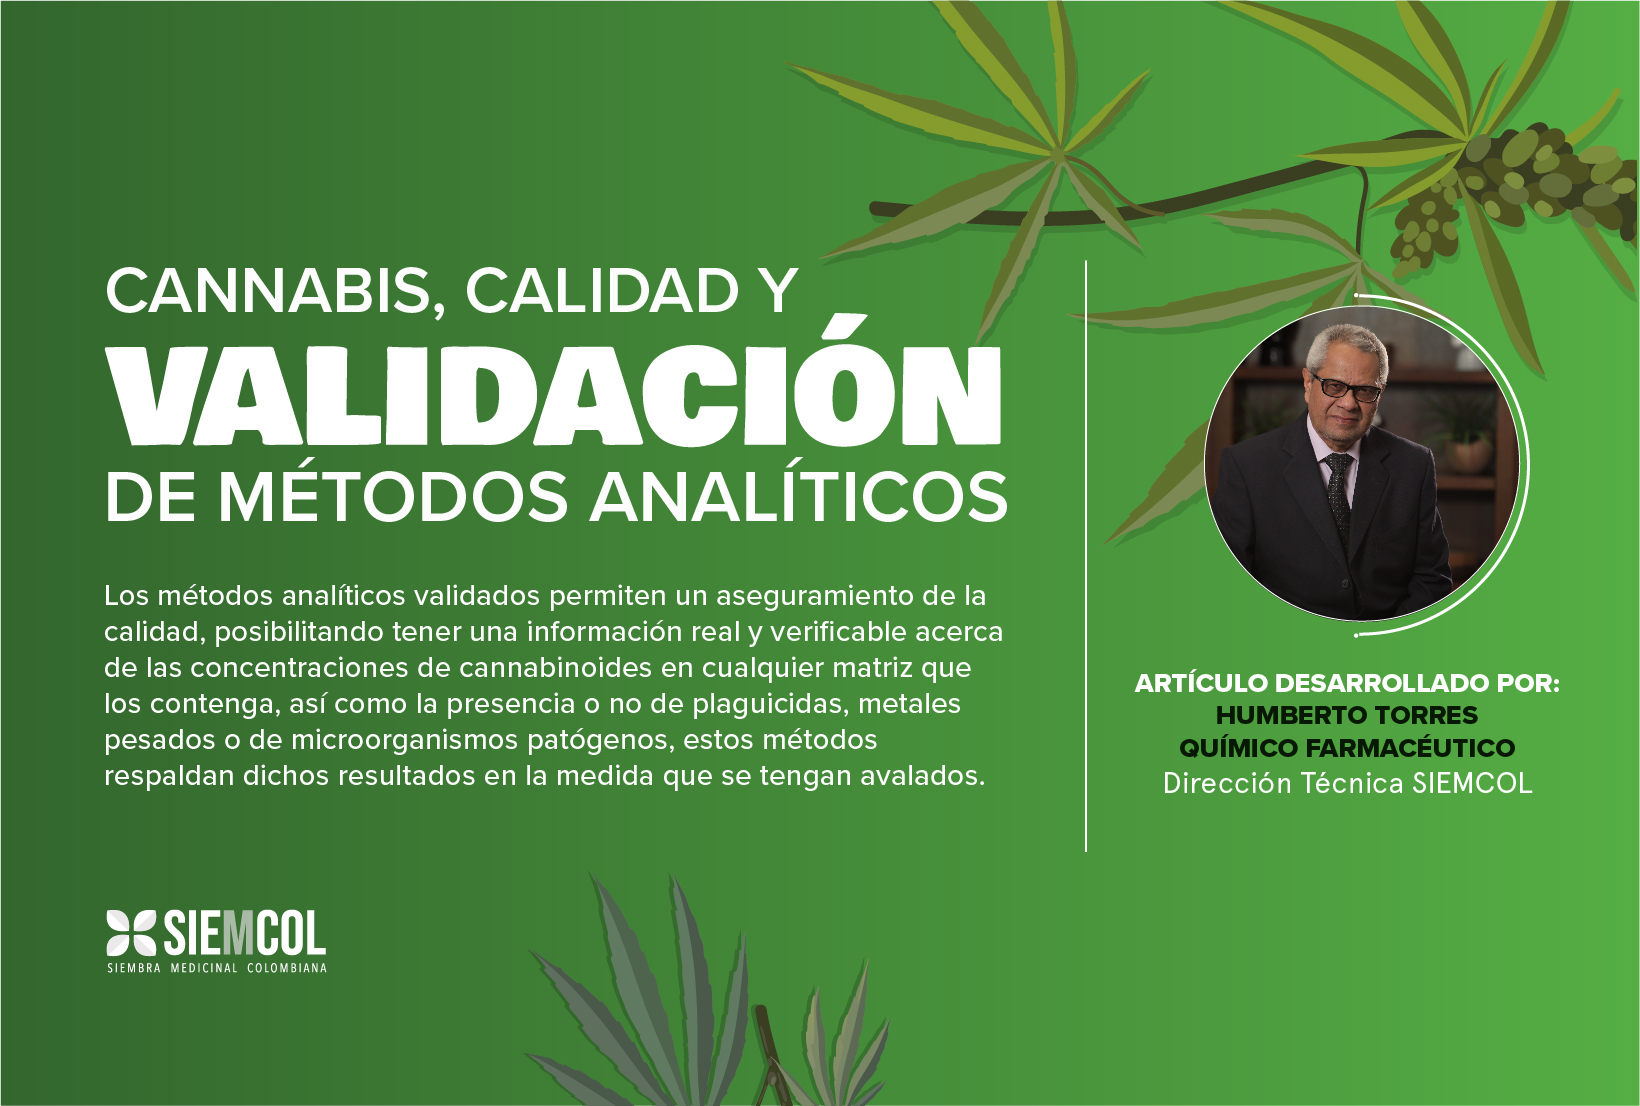 Cannabis, calidad y validación de métodos analíticos